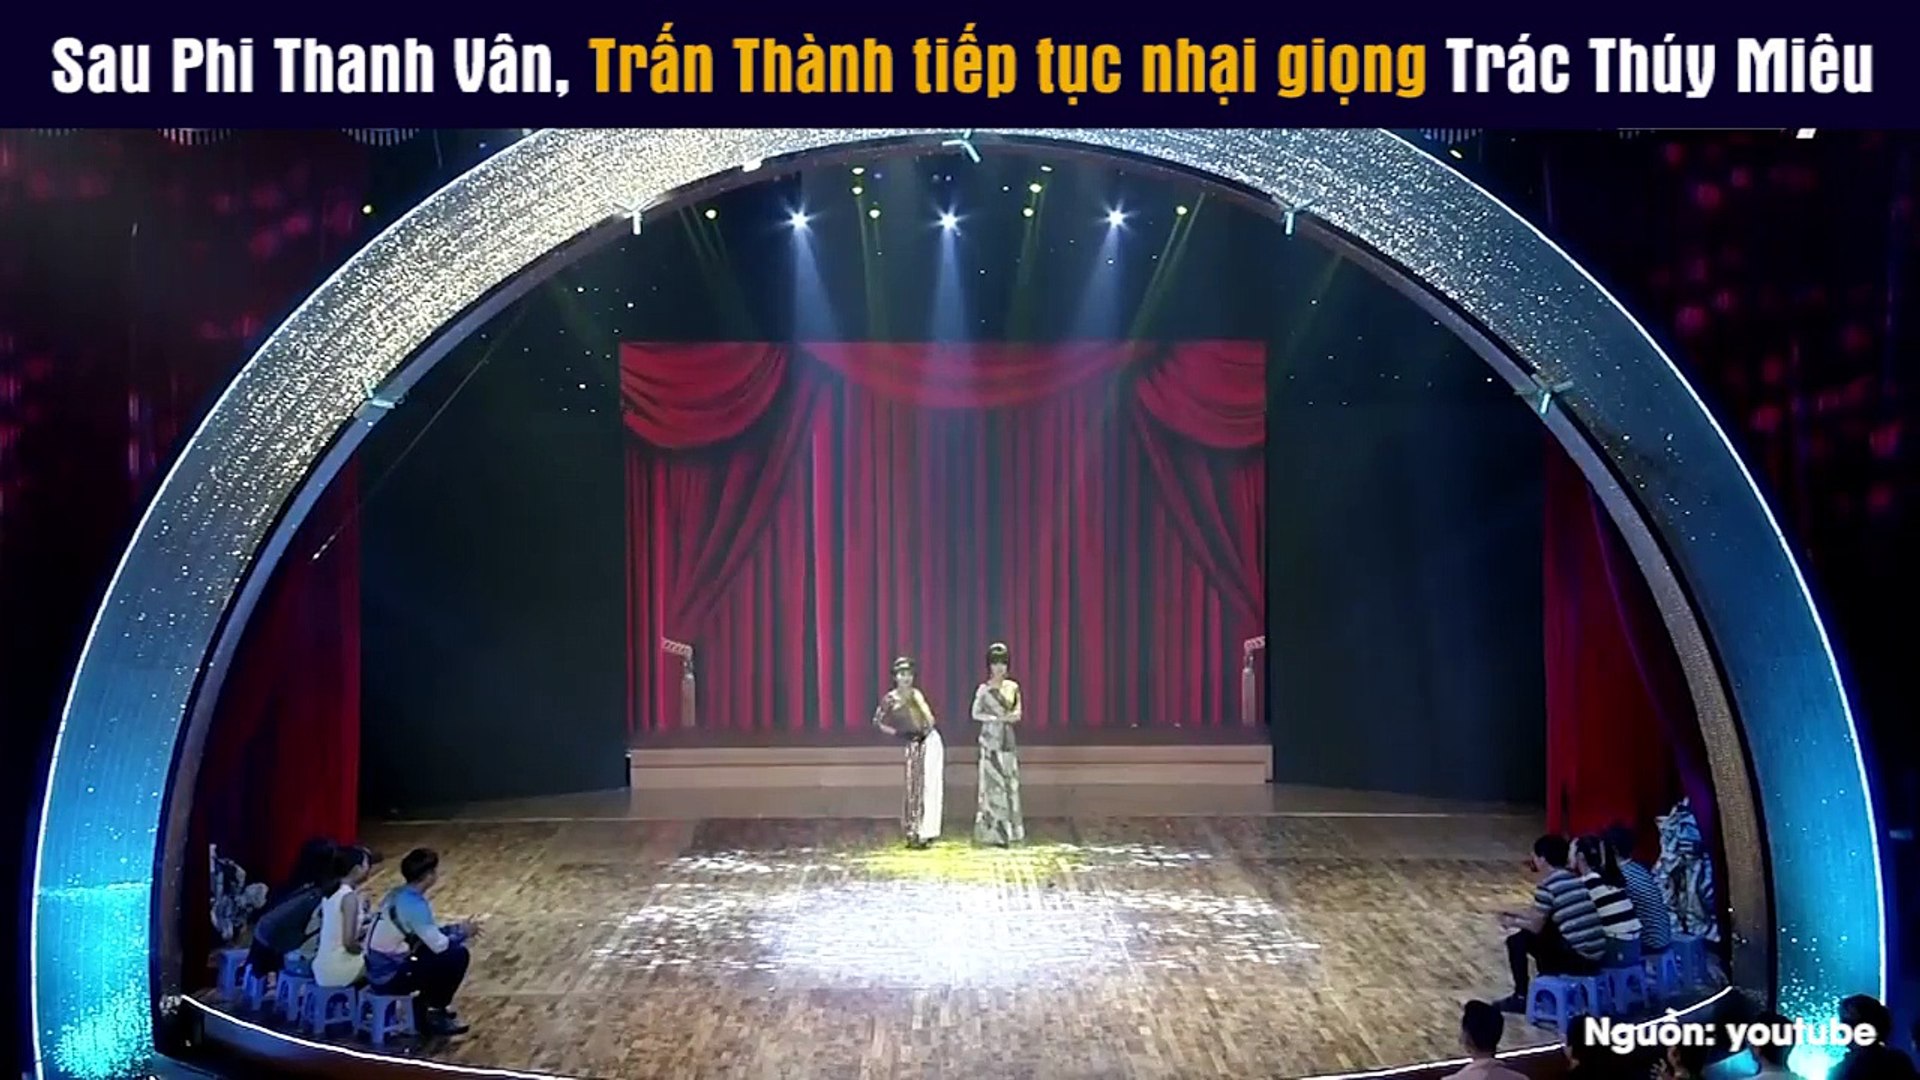 Sau Phi Thanh Vân, Trấn Thành tiếp tục nhại giọng Trác Thúy Miêu